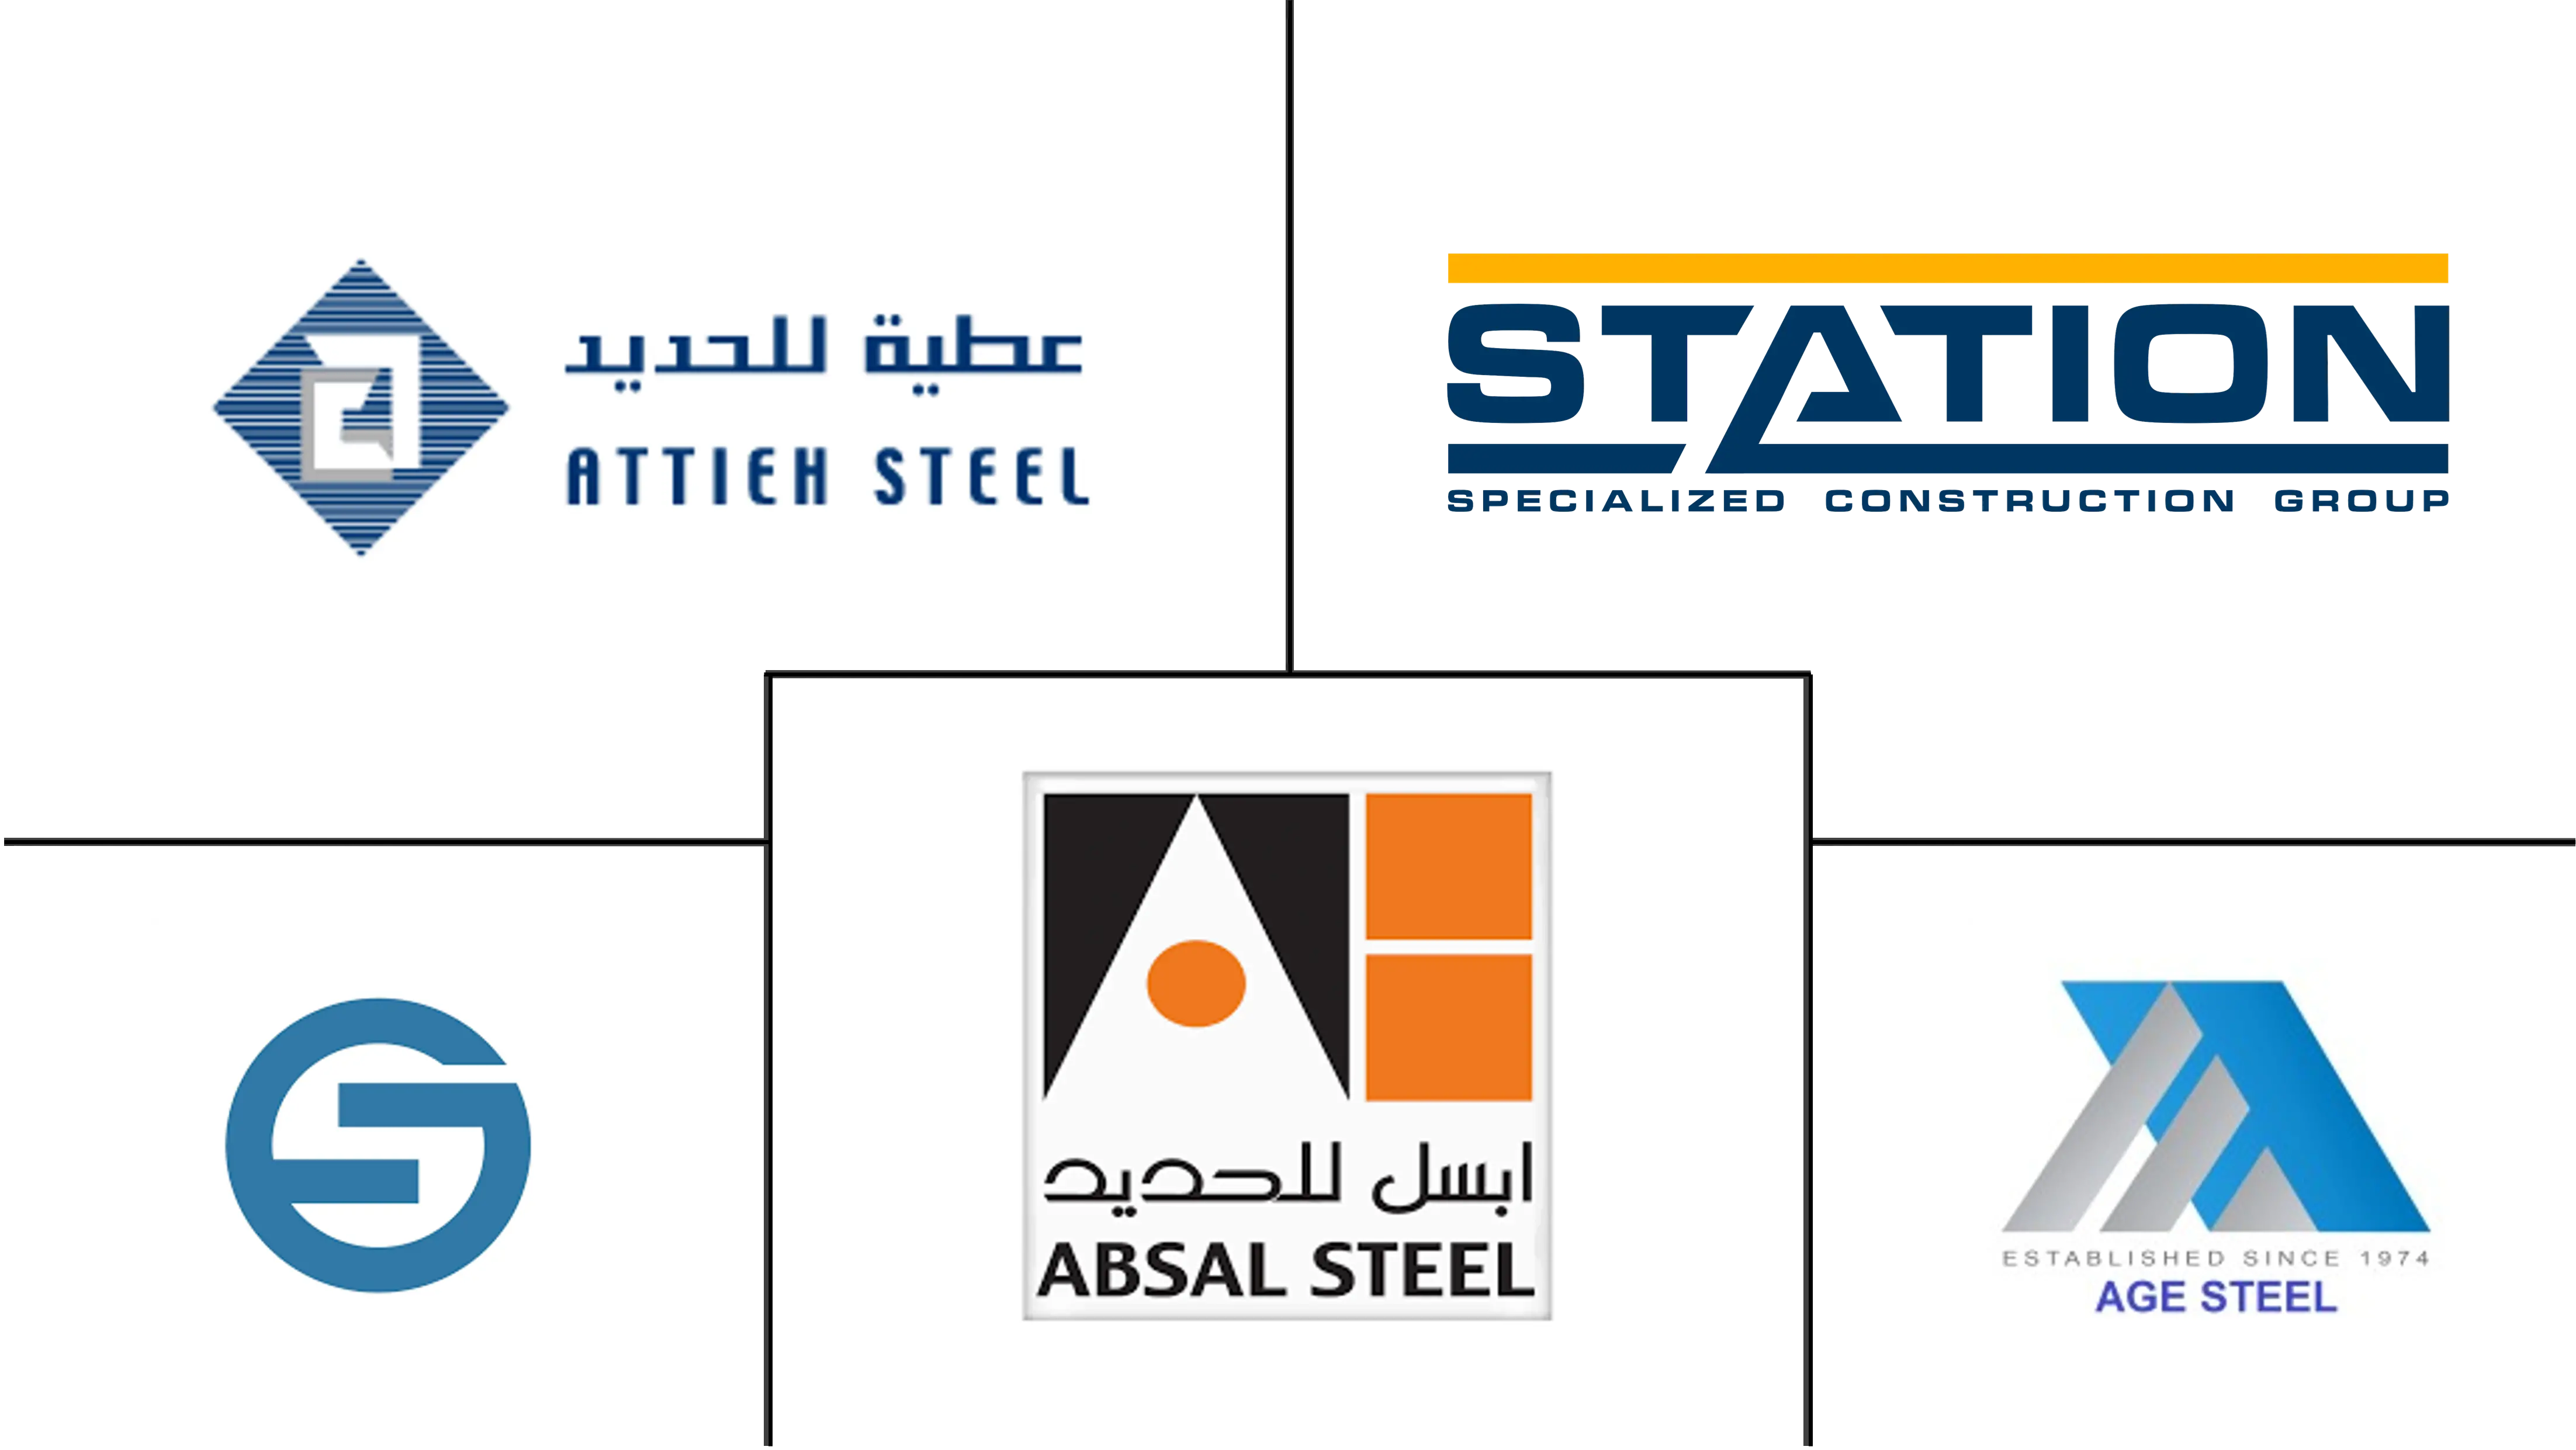 사우디 아라비아 구조용 철강 제조 시장 주요 업체